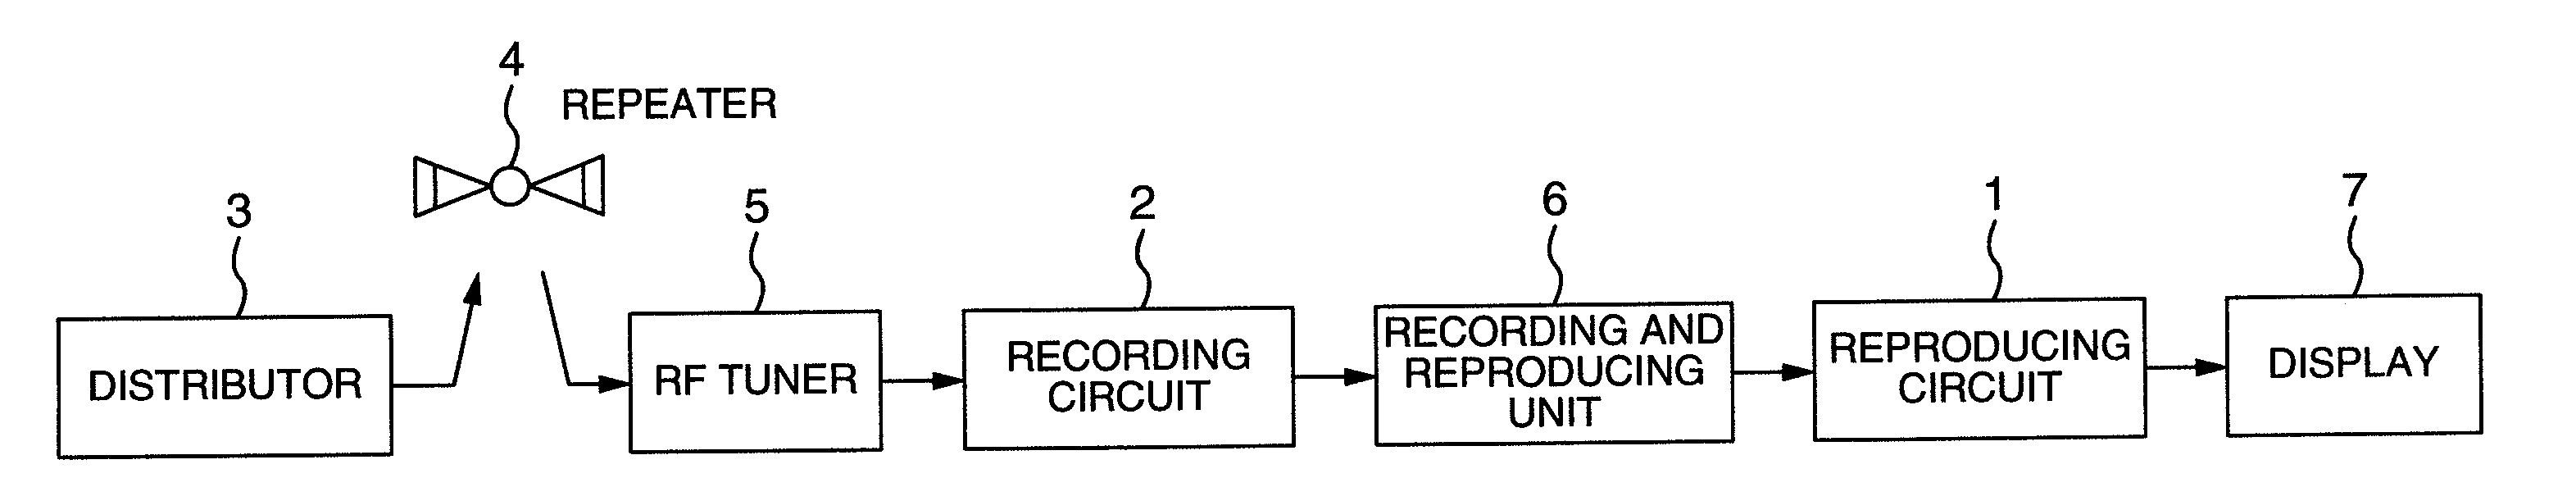 Digital information recording apparatus, reproducing apparatus and transmitting apparatus